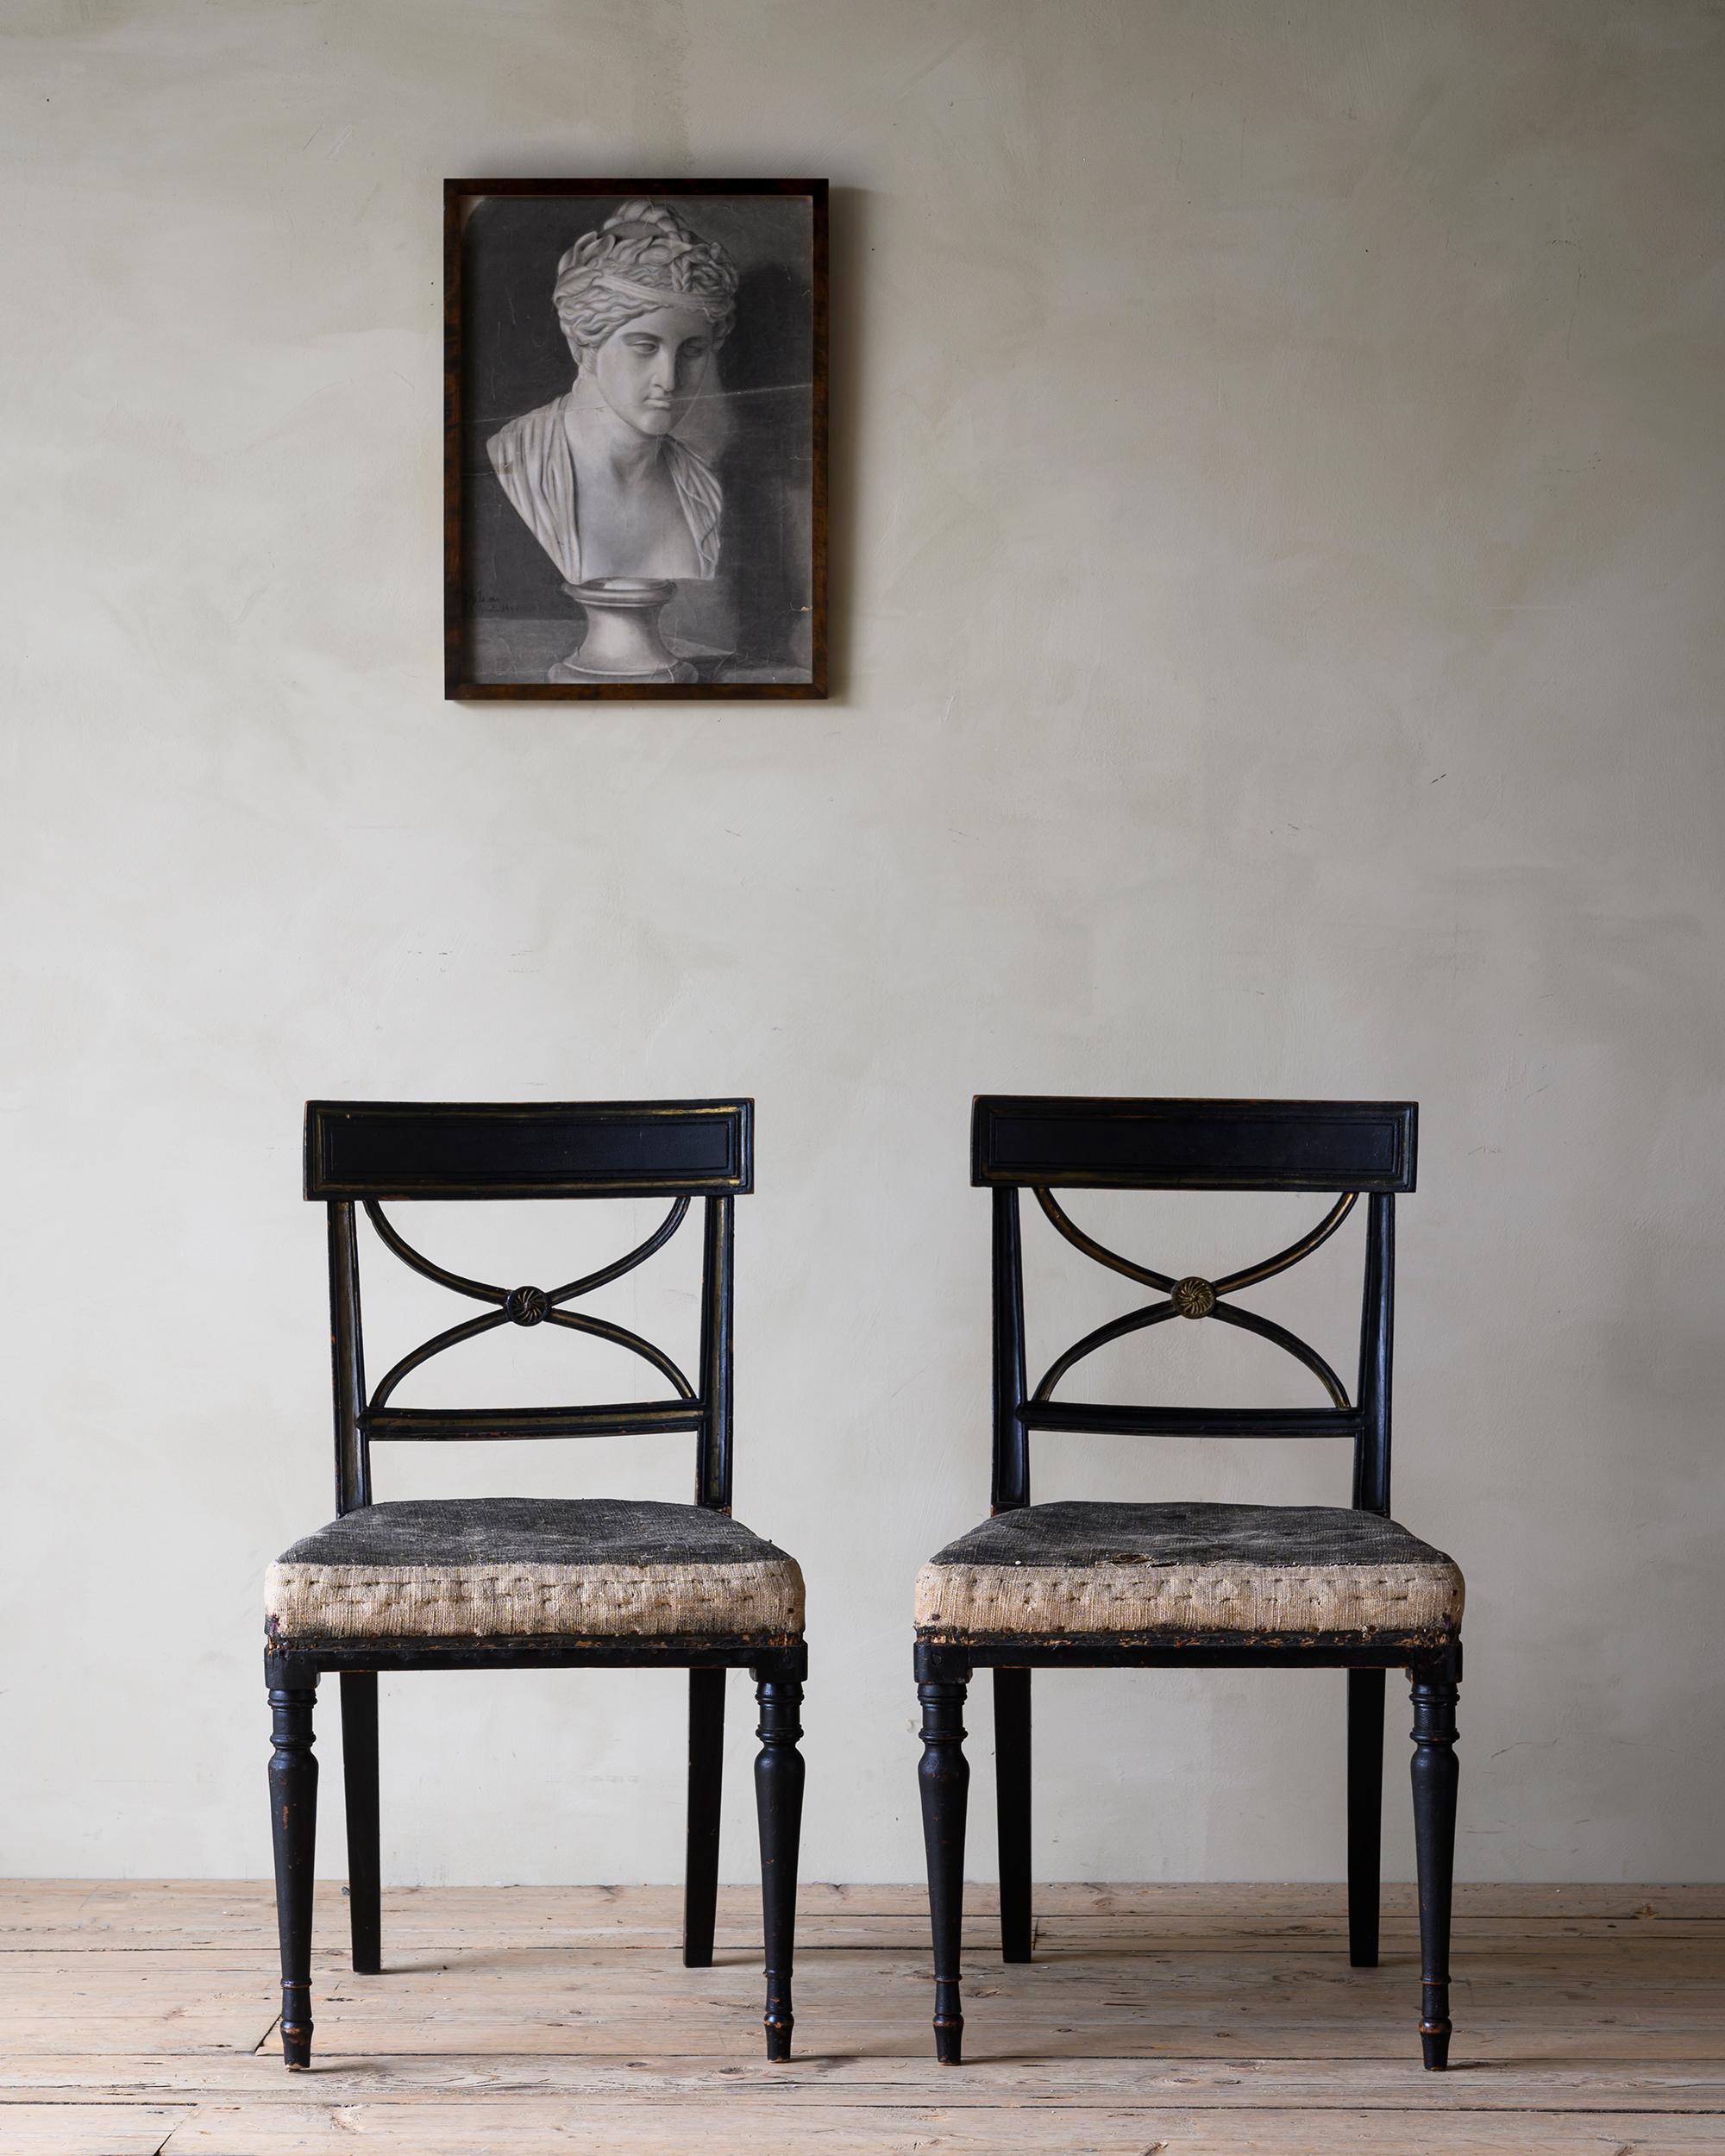 Fine paire de chaises gustaviennes du 19ème siècle en couleur historique secondaire et avec son rembourrage d'origine, ca 1810 Stockholm, Suède. 

Ce modèle particulier s'appelle Bellman, d'après Carl Michael Bellman (1740 - 1795),